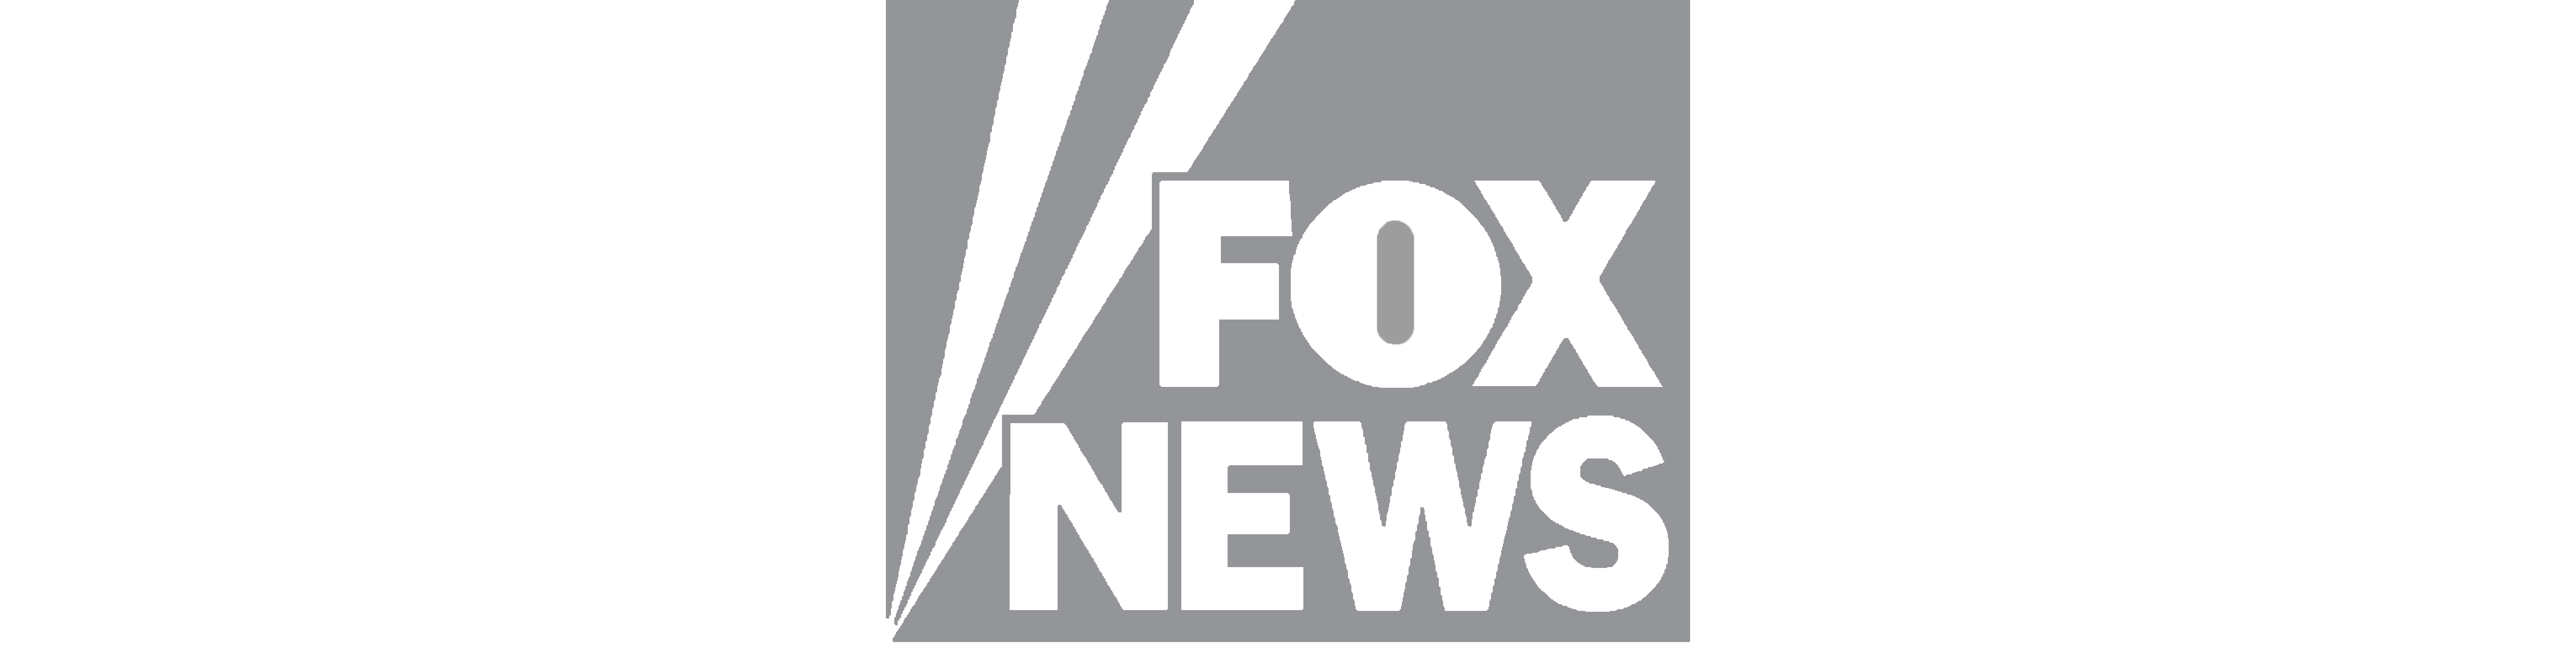 Fox News Png Logo Free Transparent PNG Logos